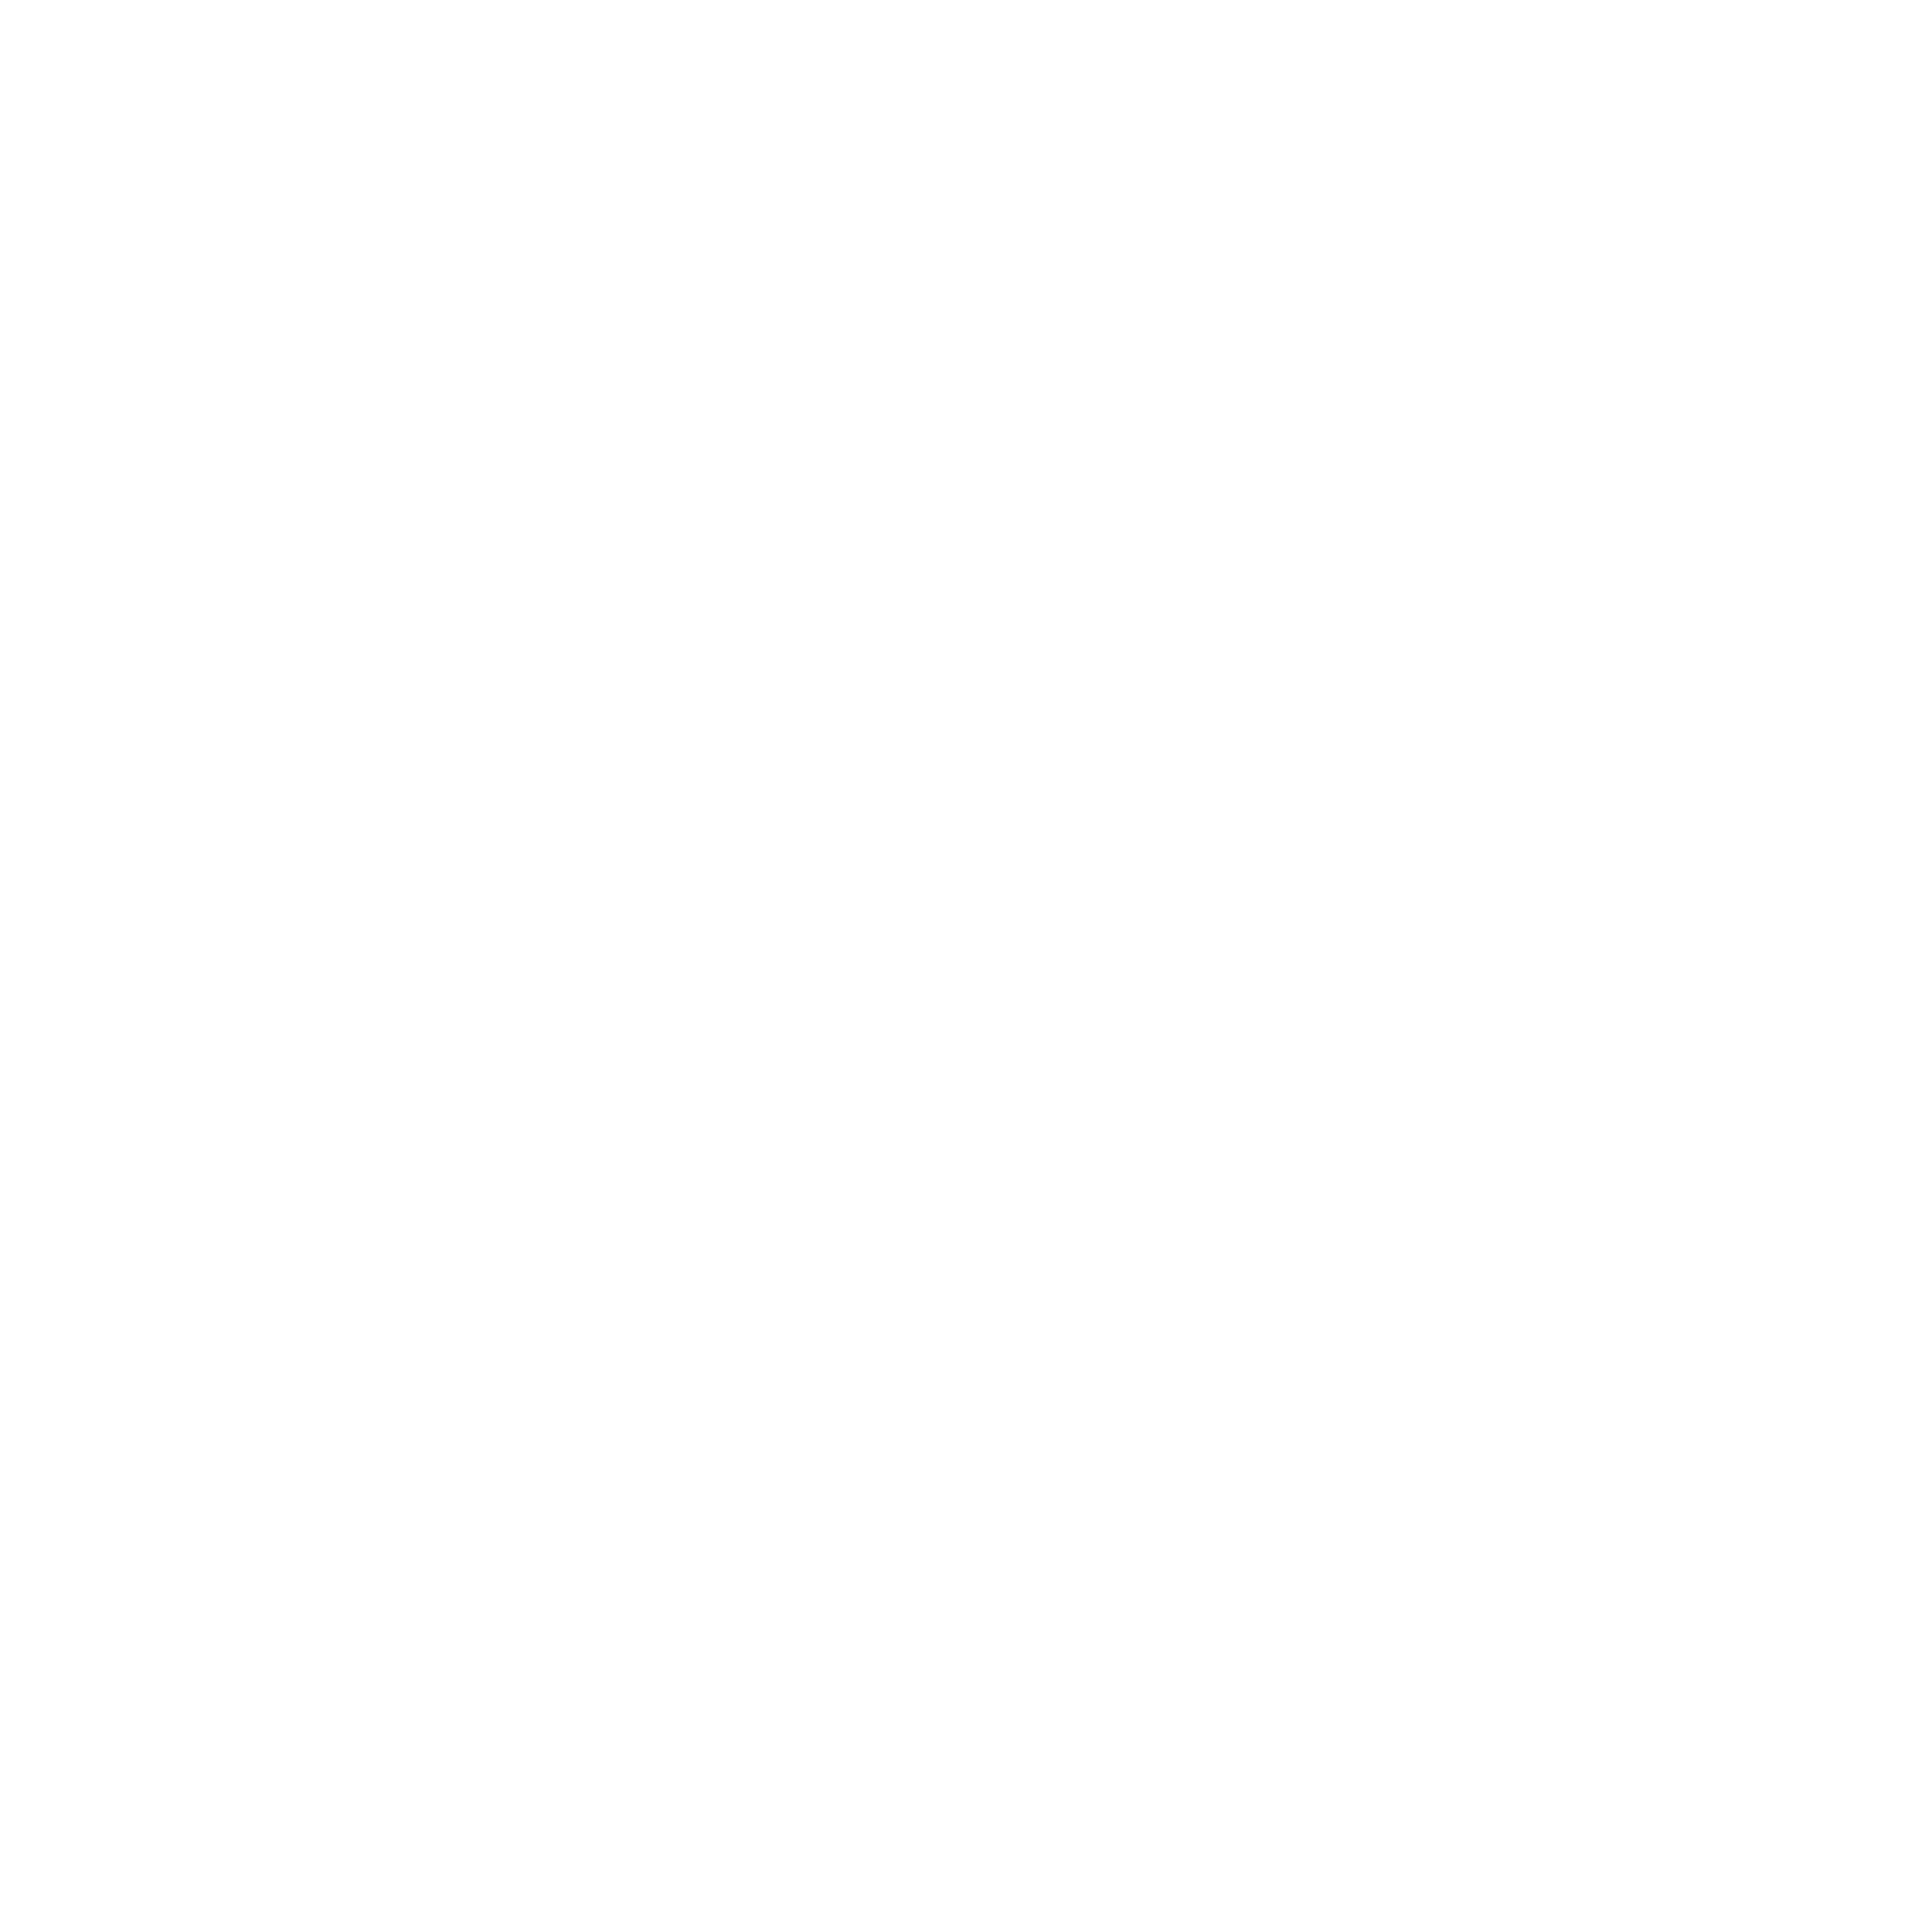 Renolit group logo